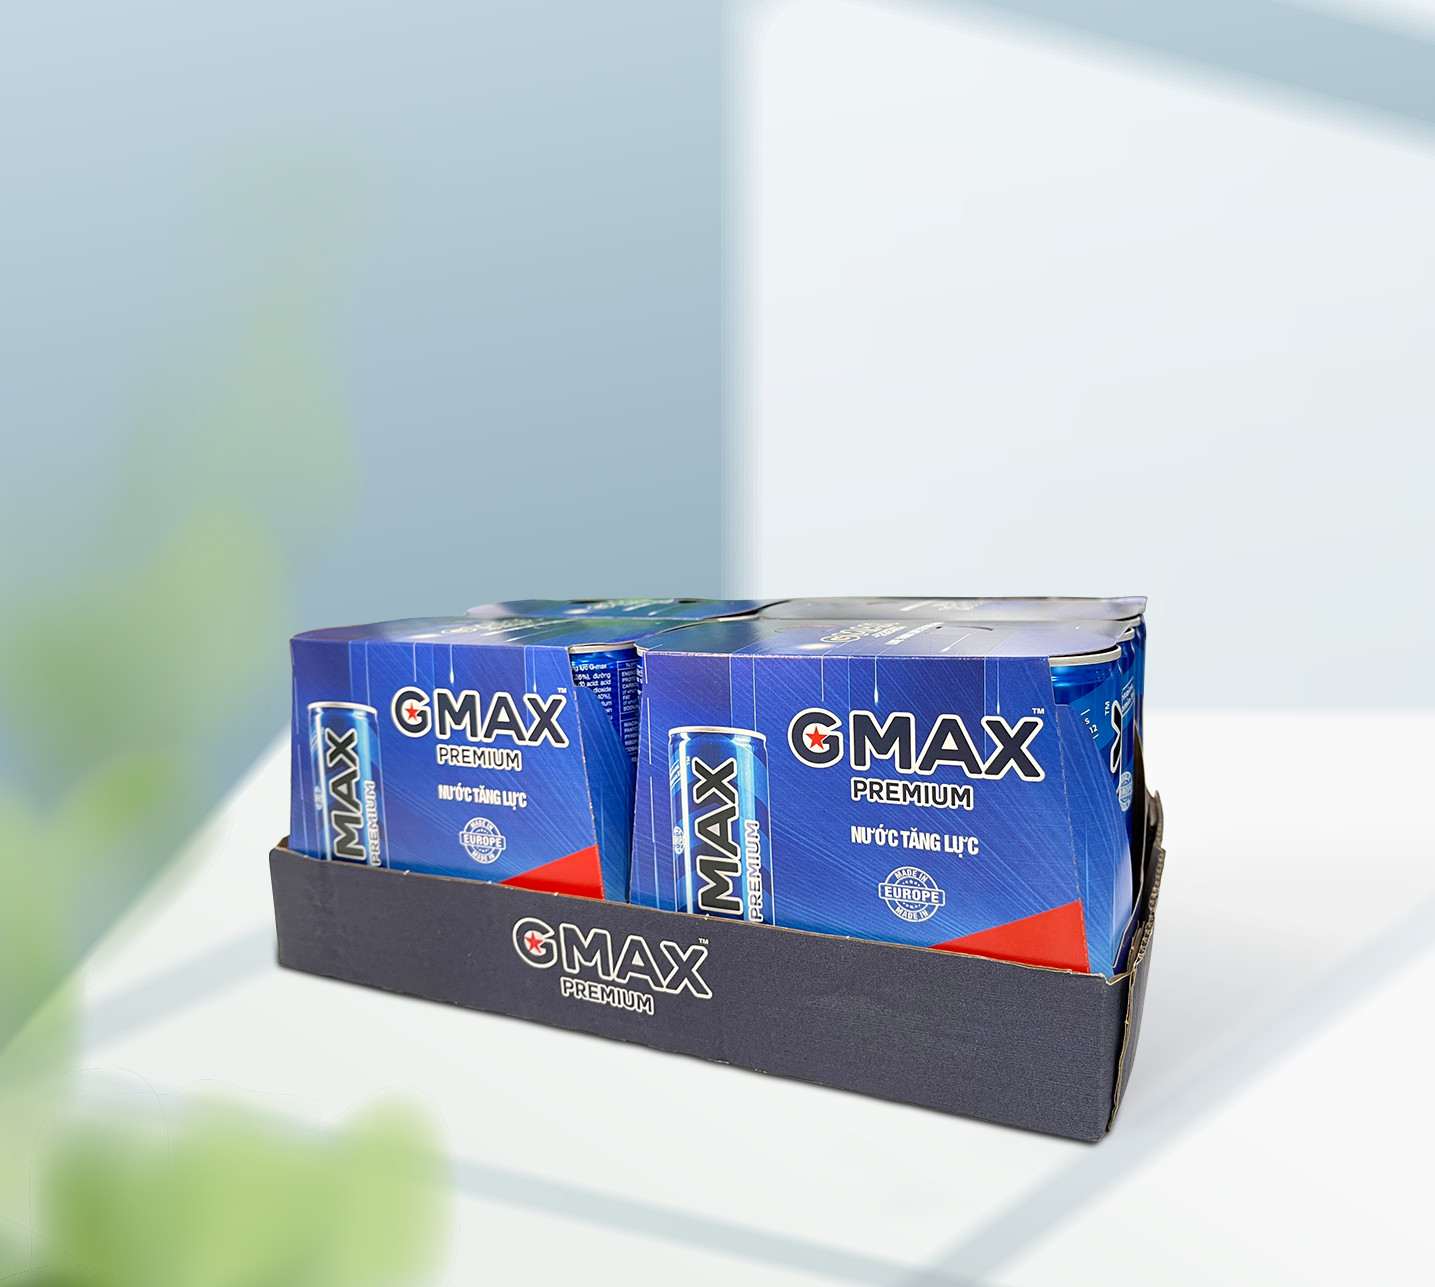 [MUA 5 TẶNG 1] Nước tăng lực Gmax Premium vị Classic (250ml x 6)